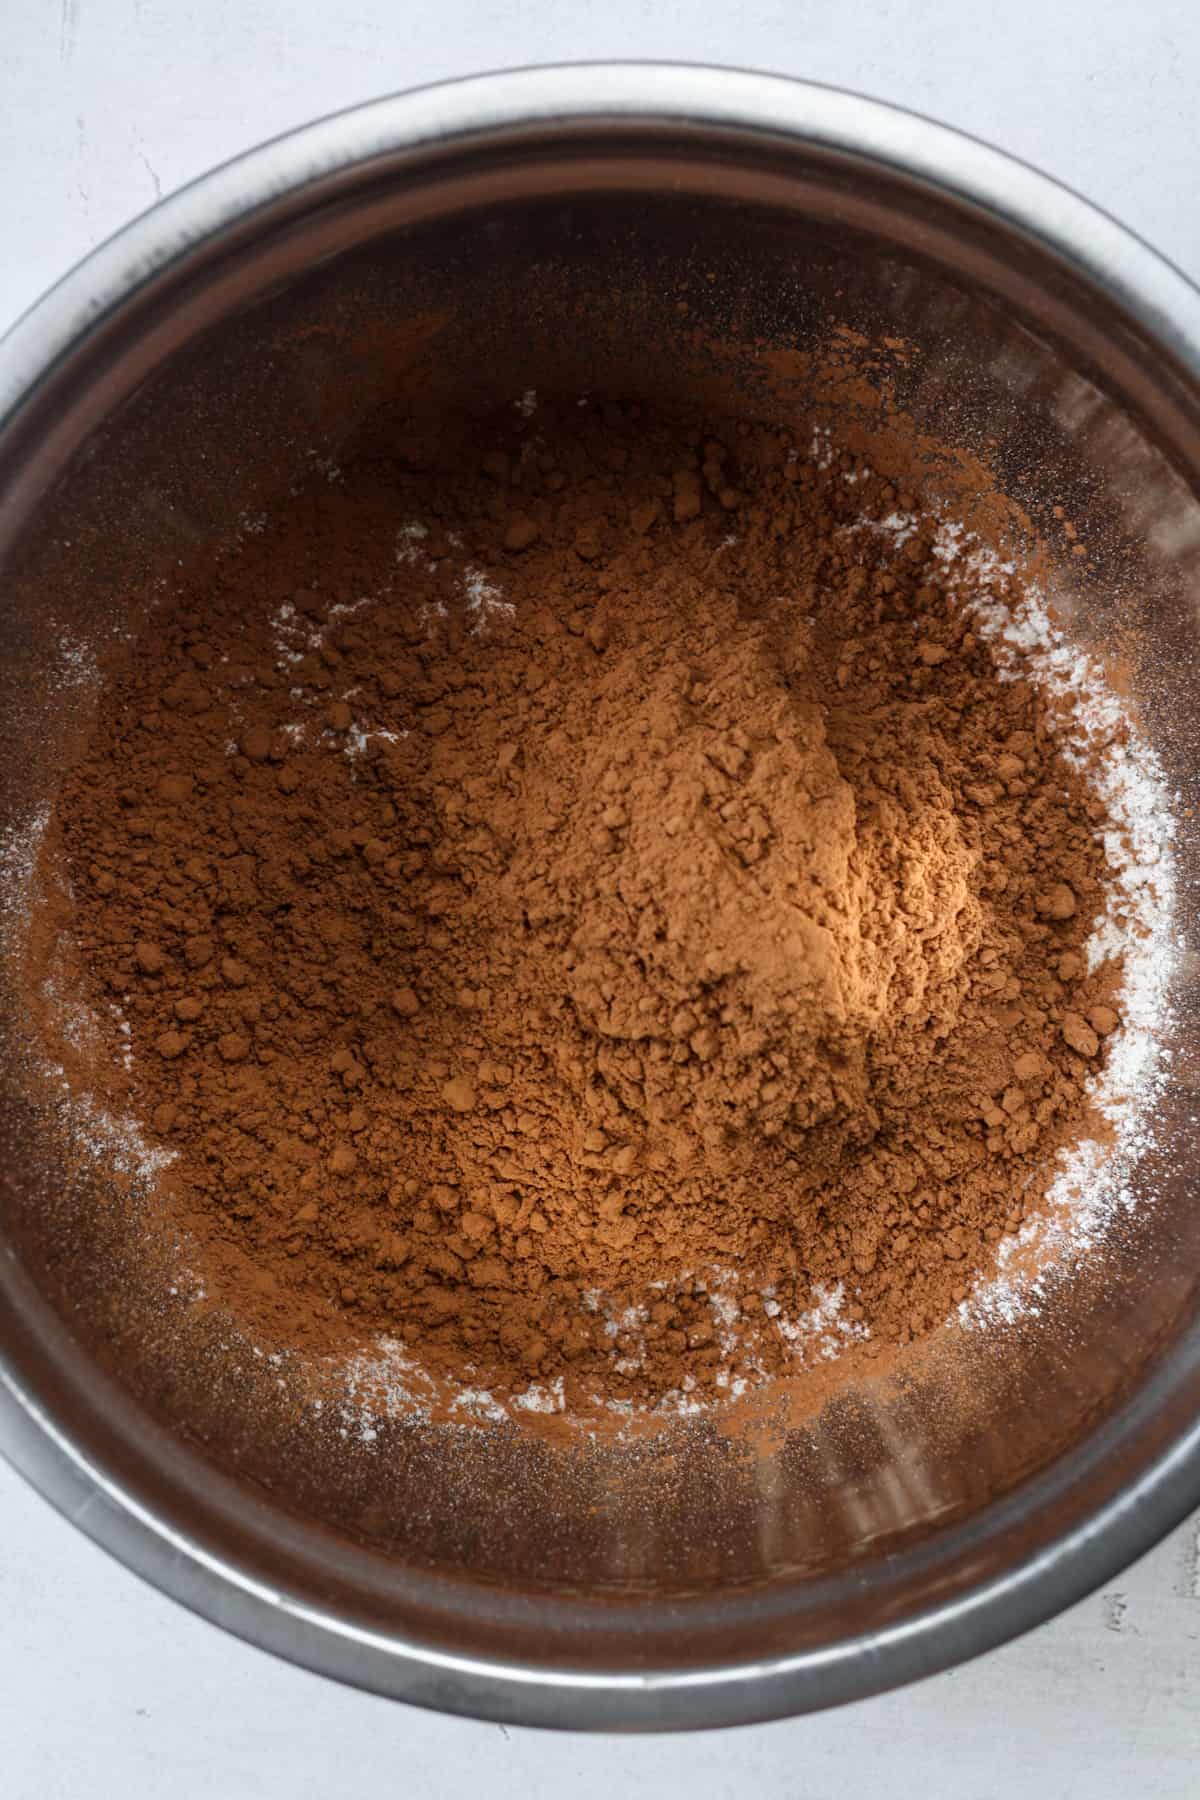 Dark cocoa powder in bowl.